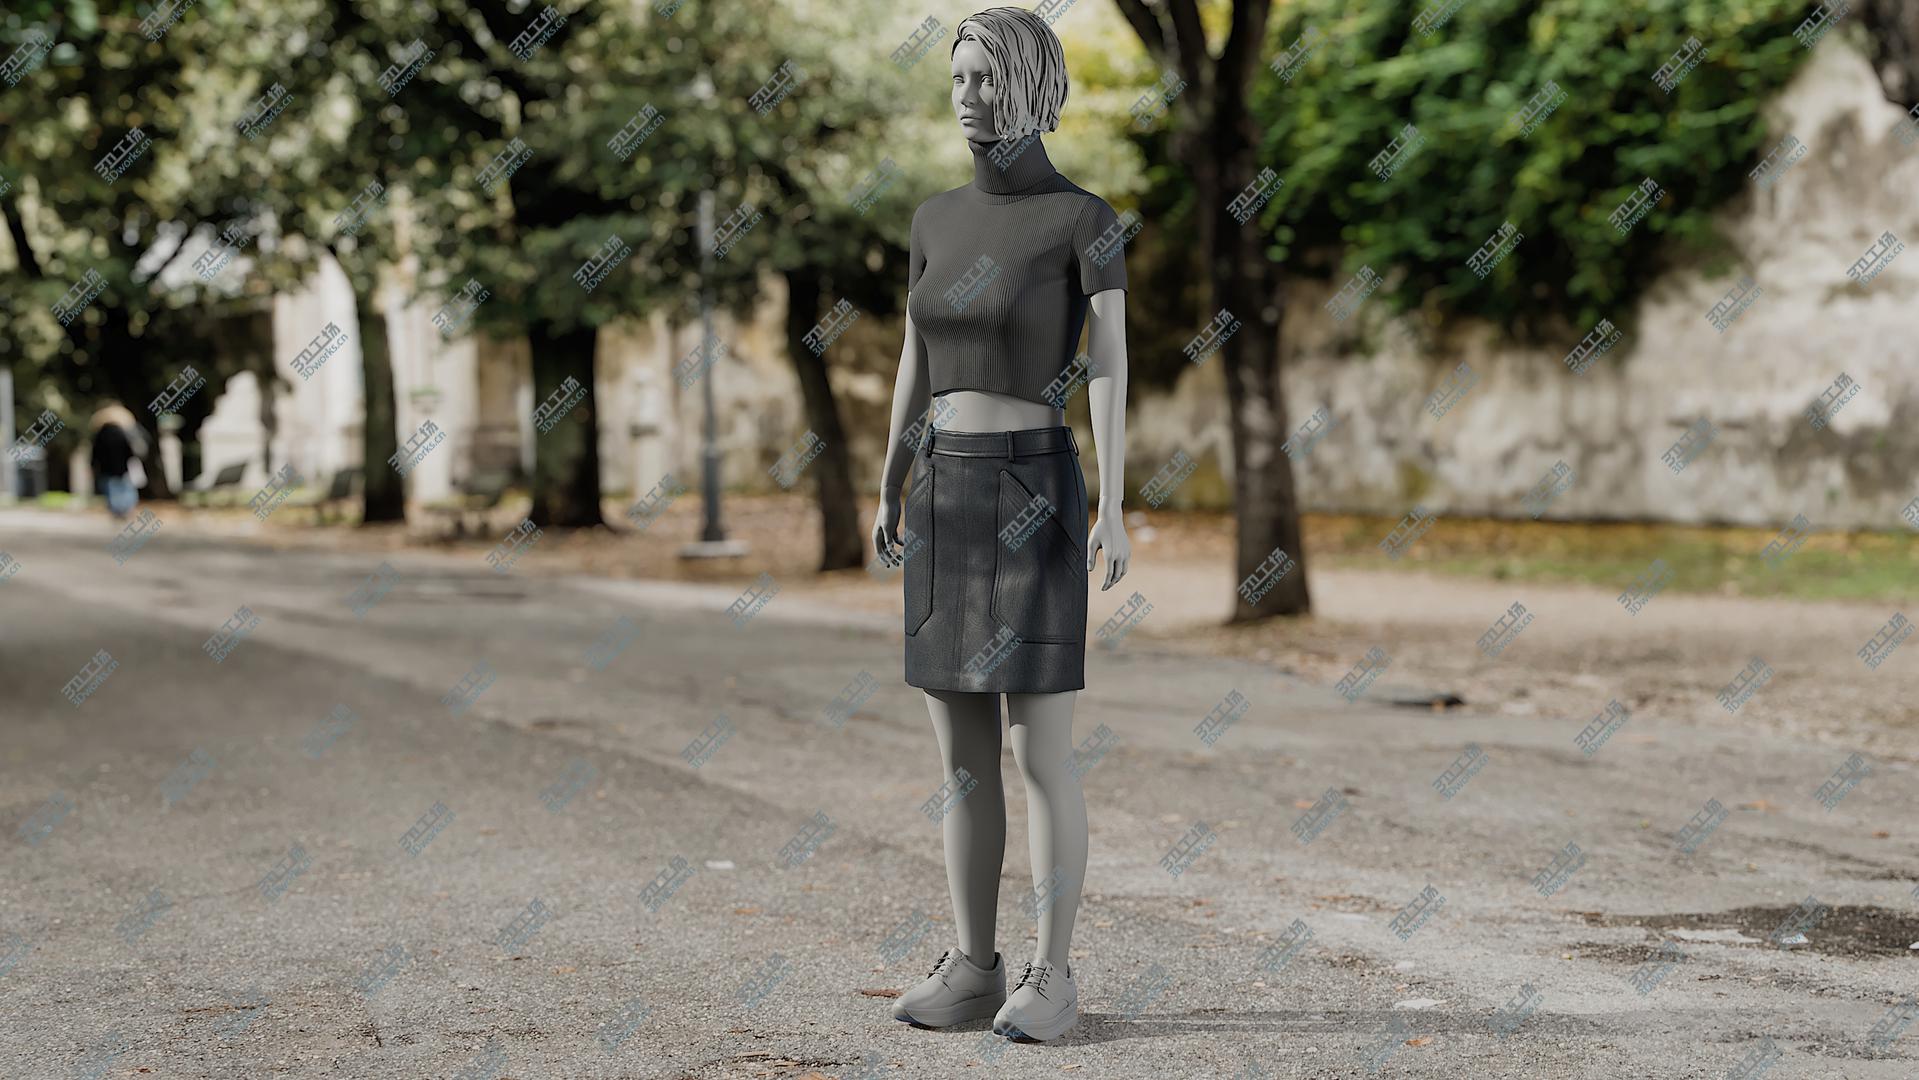 images/goods_img/202104091/Women's Skirt with TShirt 1 3D model/1.jpg